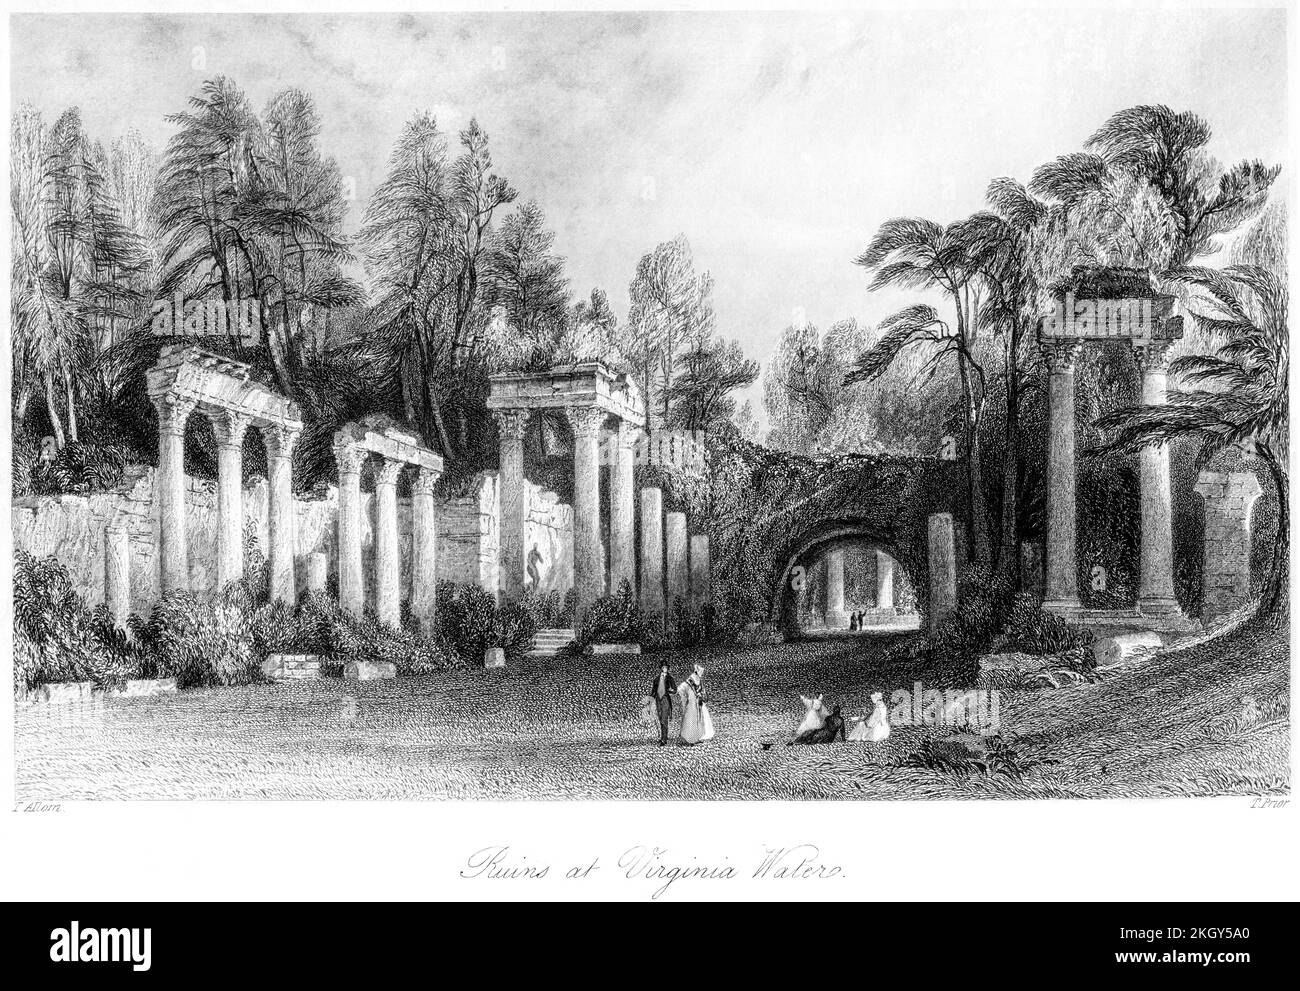 Eine Gravur der Ruinen von Leptis Magna in Virginia Water, Surrey UK, gescannt mit hoher Auflösung aus einem Buch, das 1850 gedruckt wurde. Glaubte, dass es keine Urheberrechte gibt Stockfoto